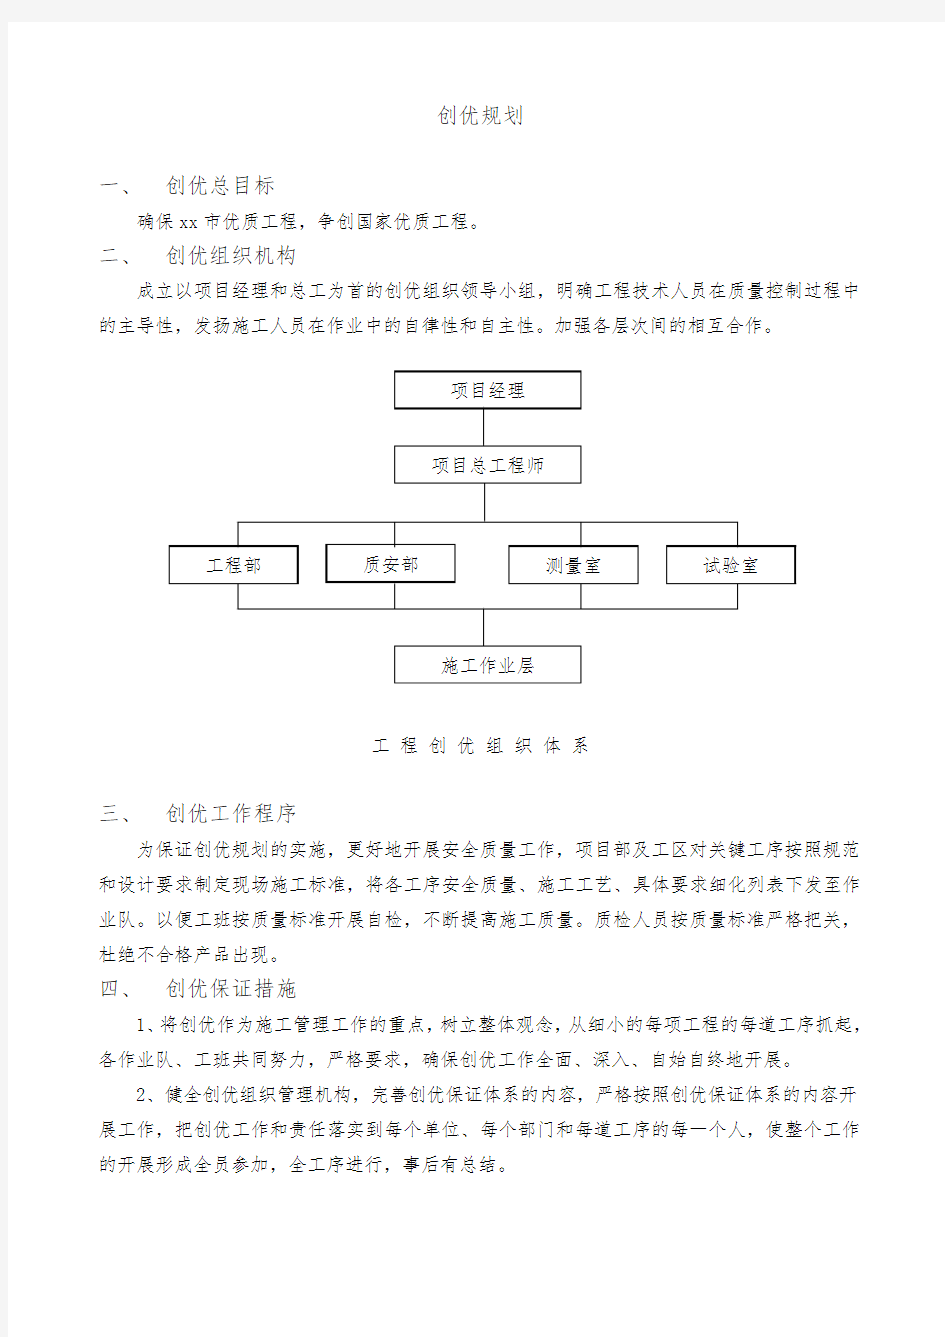 北京地铁十号线某标工程创优规划方案